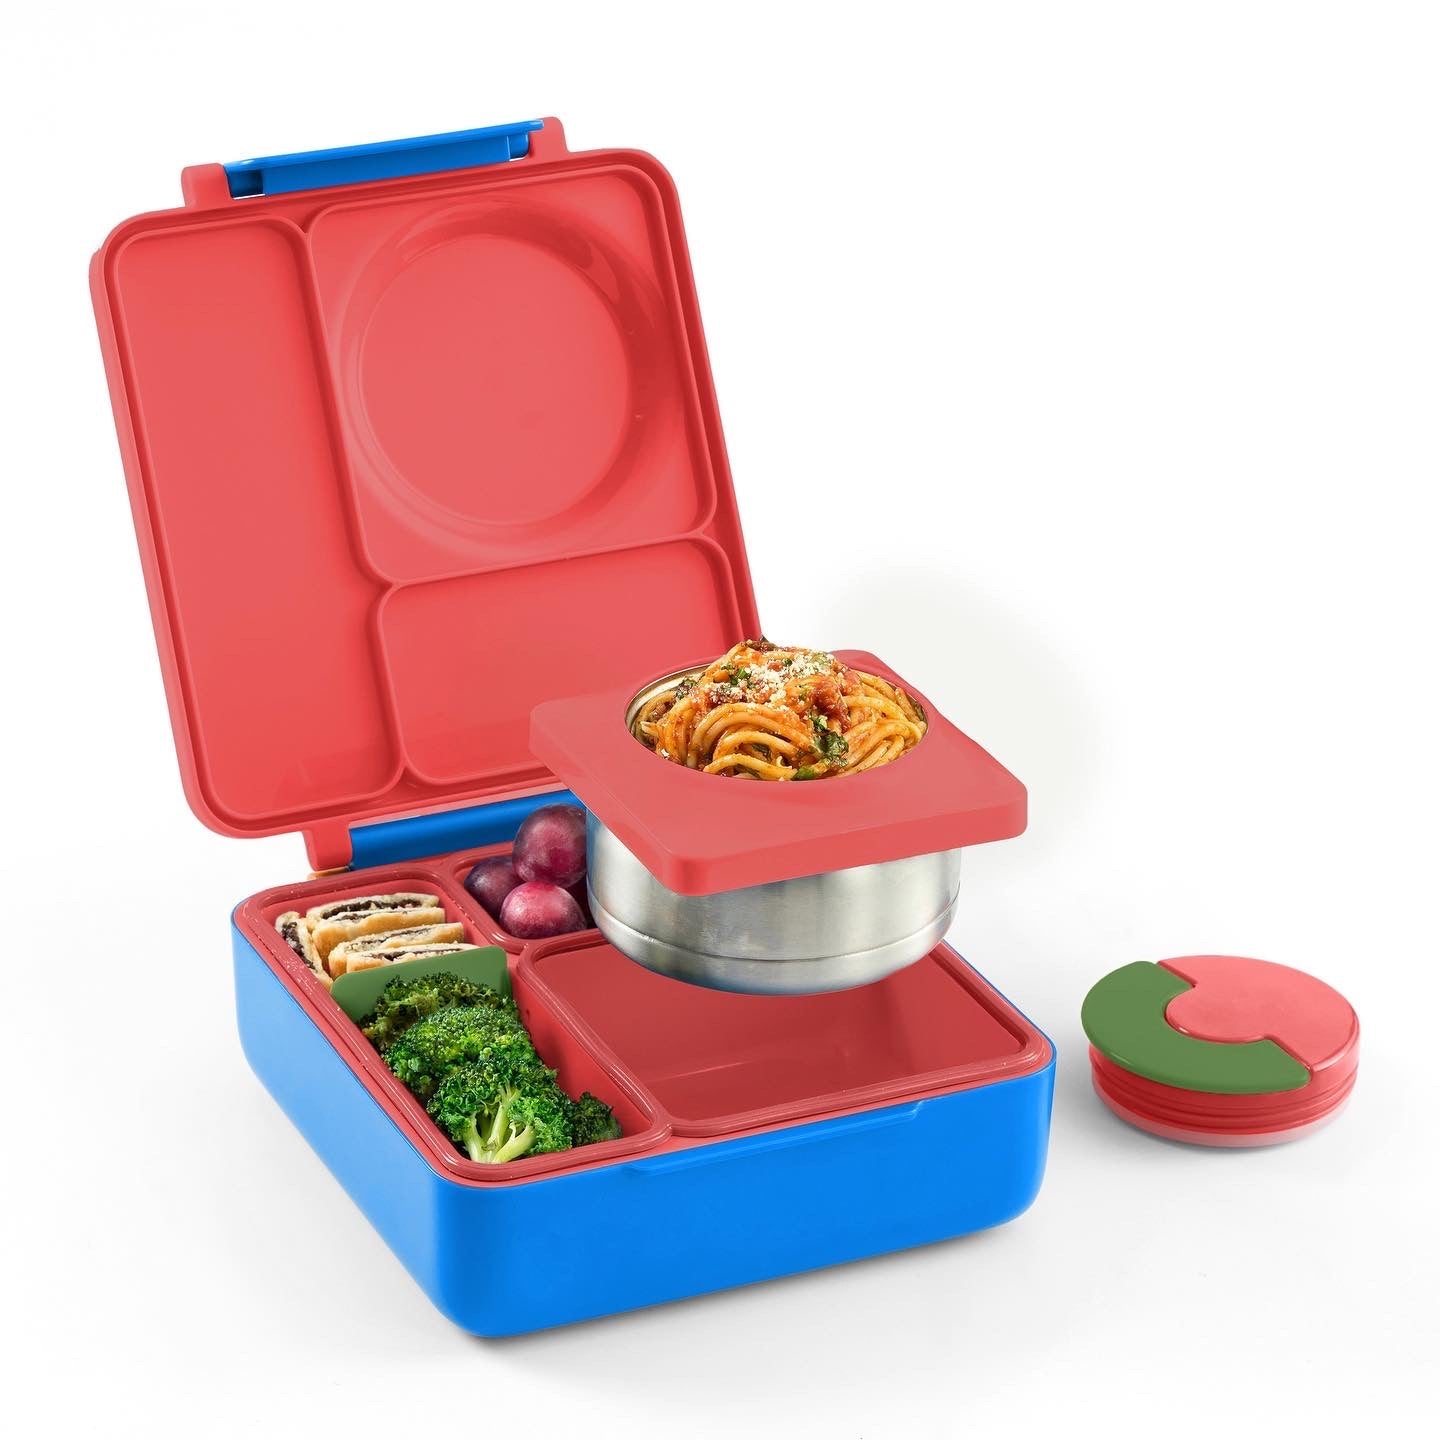 Lonchera Omiebox Bento Box Con Aislamiento Térmico Roja Edición Limitada